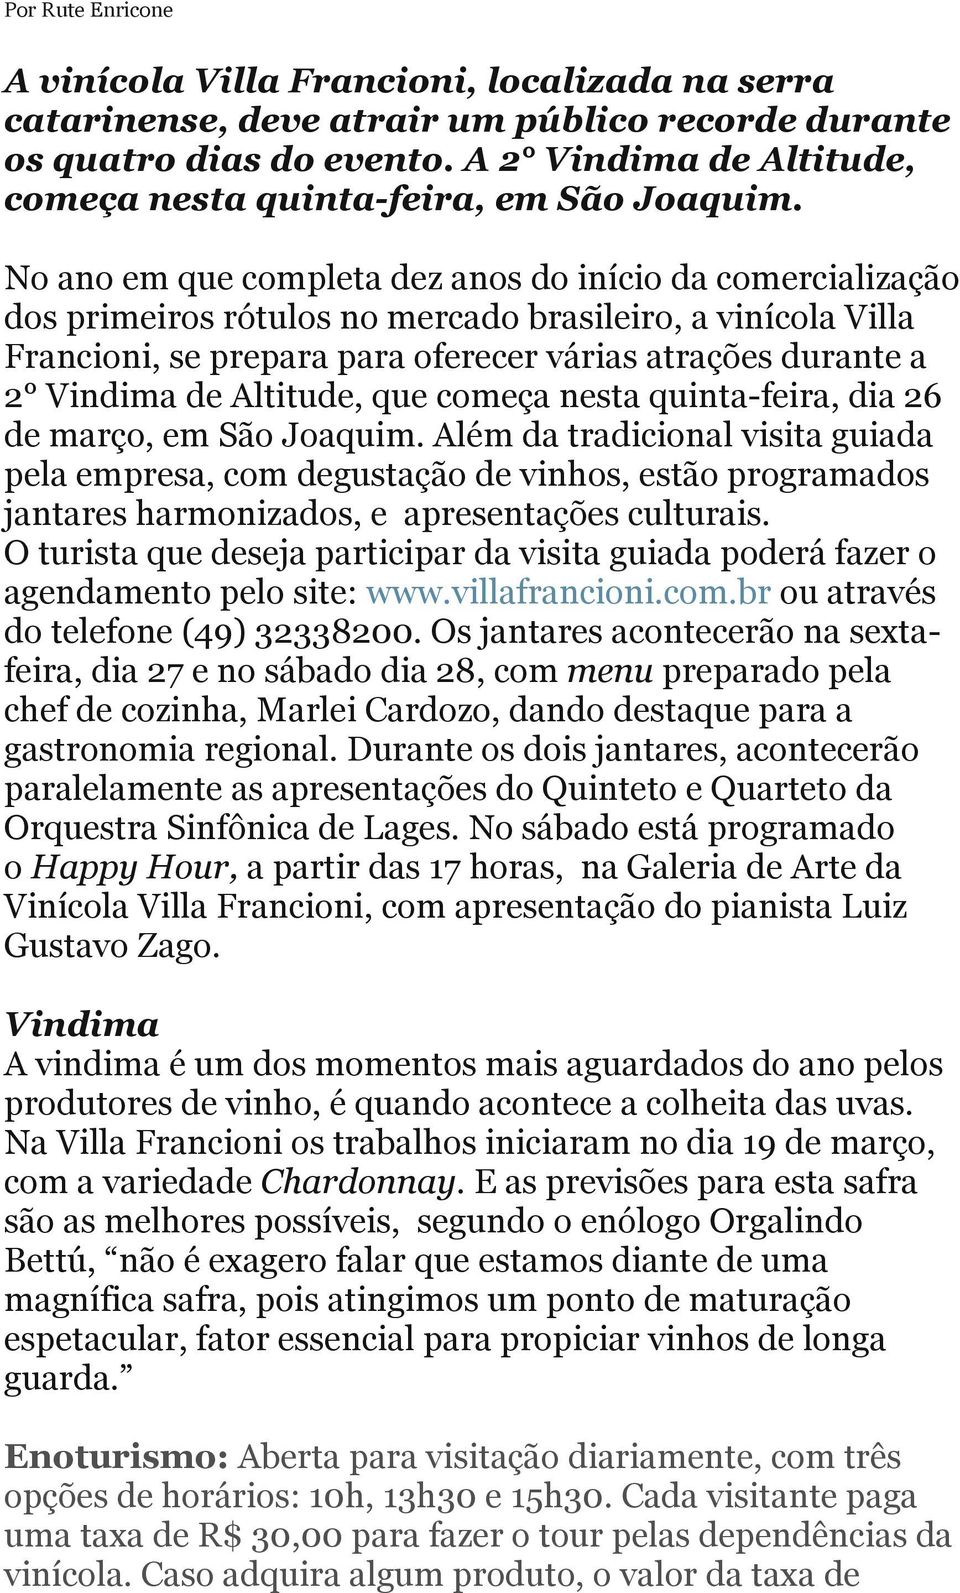 No ano em que completa dez anos do início da comercialização dos primeiros rótulos no mercado brasileiro, a vinícola Villa Francioni, se prepara para oferecer várias atrações durante a 2 Vindima de